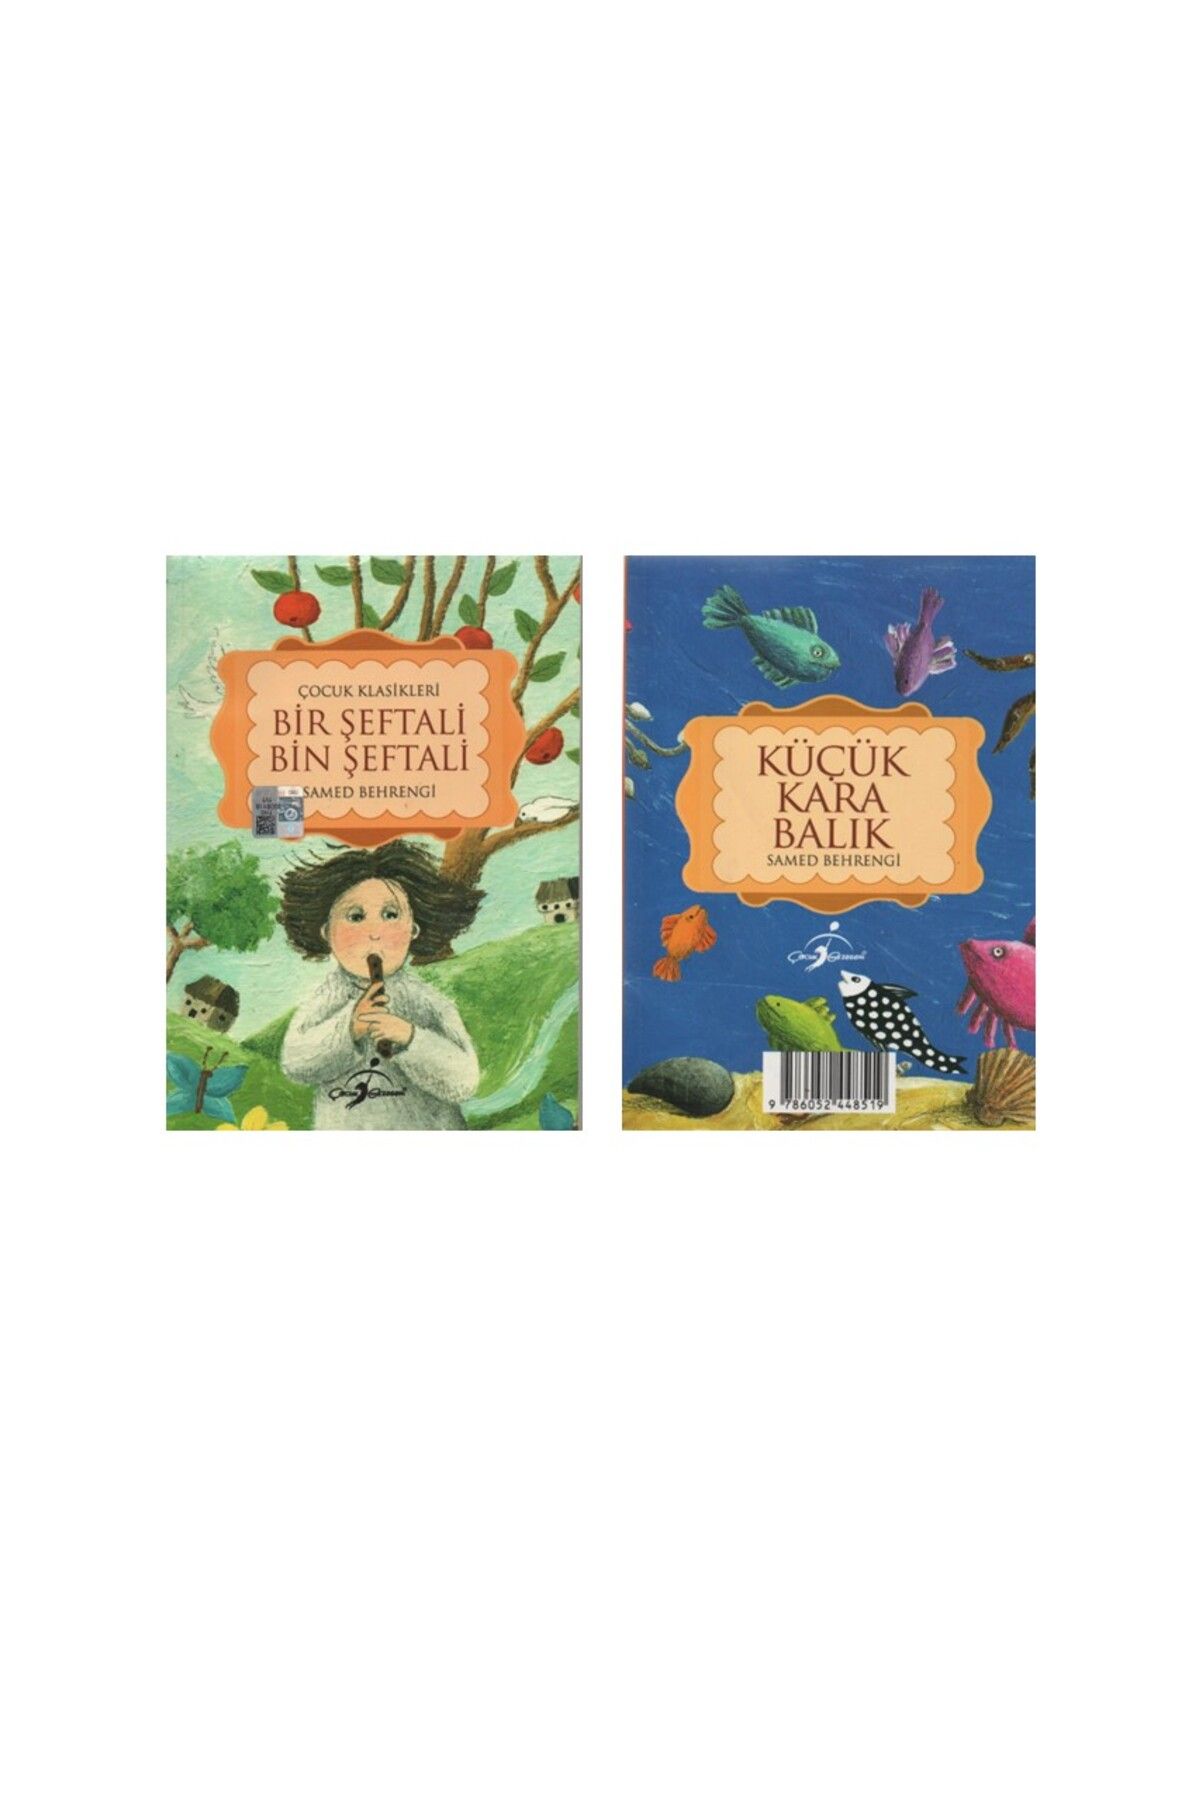 Çocuk Gezegeni - Özel Ürün Bir Şeftali Bin Şeftali-Küçük Kara Balık Tek Kitapta İki Hikaye(Ürün Tek Kitaptır!!!!!)